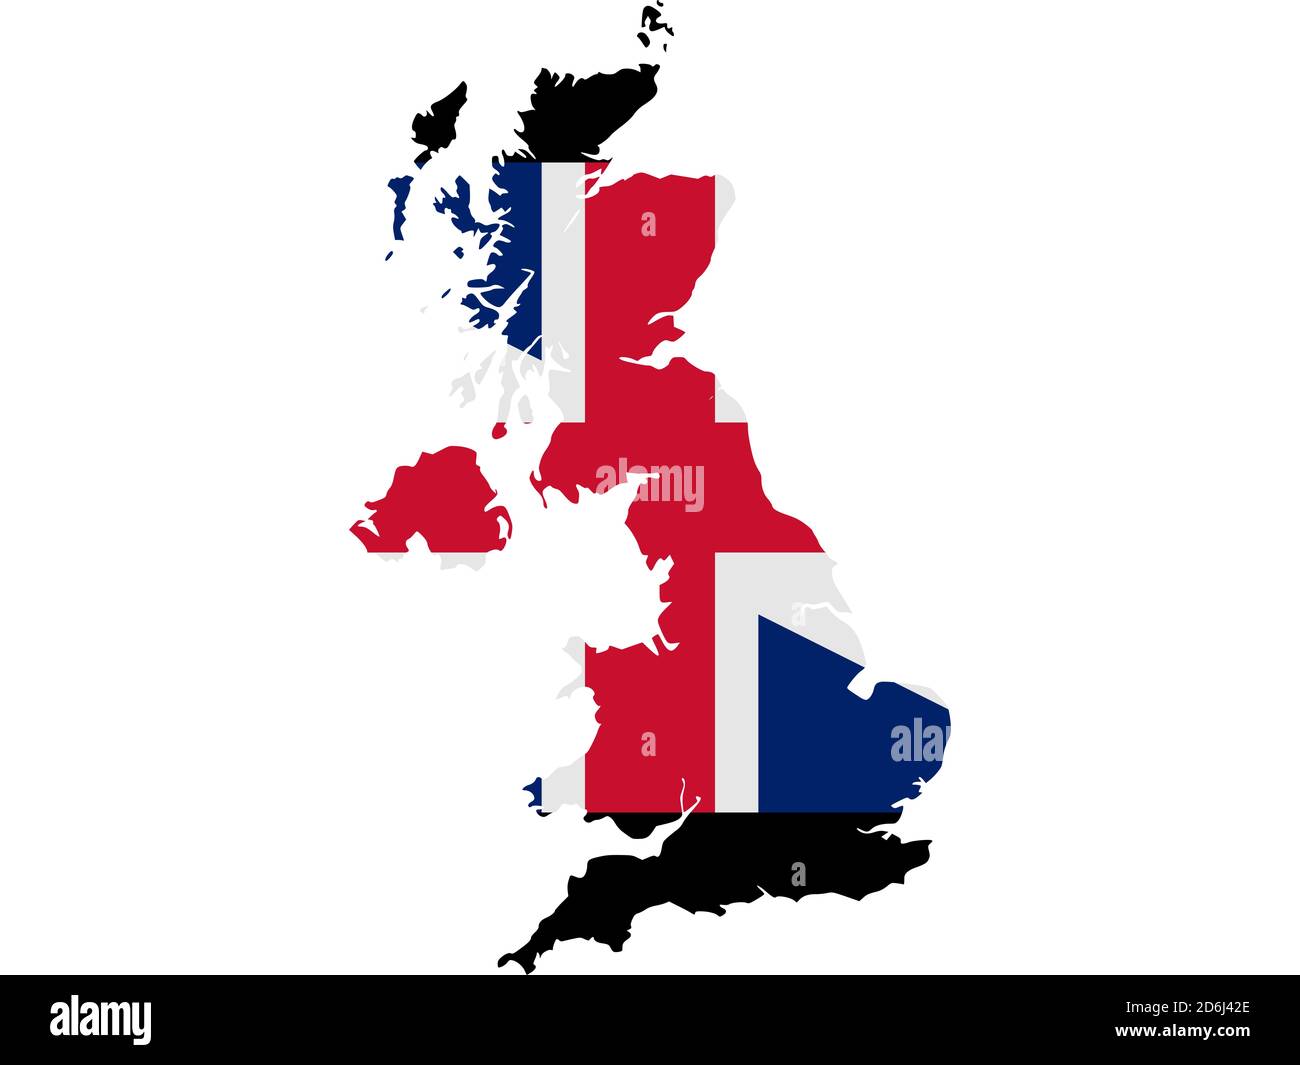 Flagge in Form des geographischen Landes, Vereinigtes Königreich Großbritannien und Nordirland, Nordeuropa Stockfoto